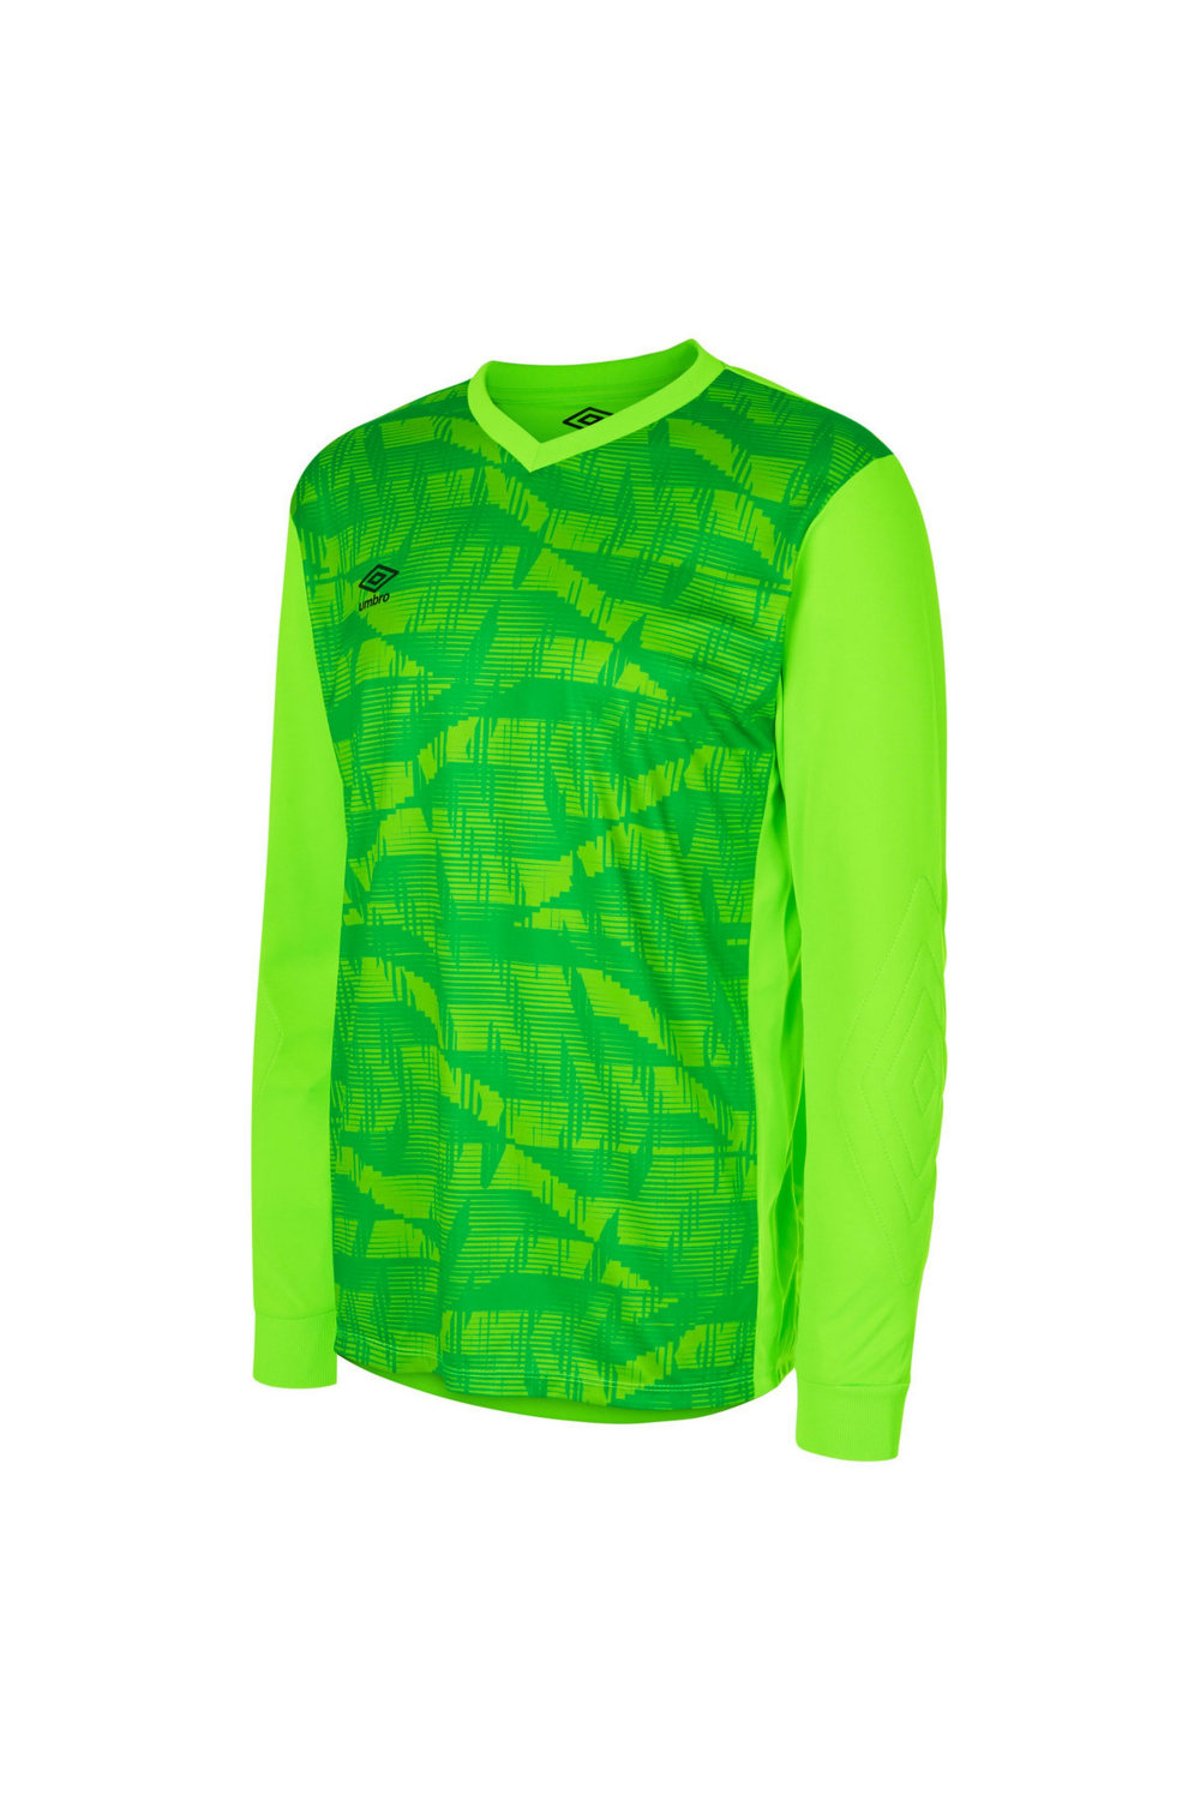 Neon Green Jersey, Green Goalkeeper Jersey